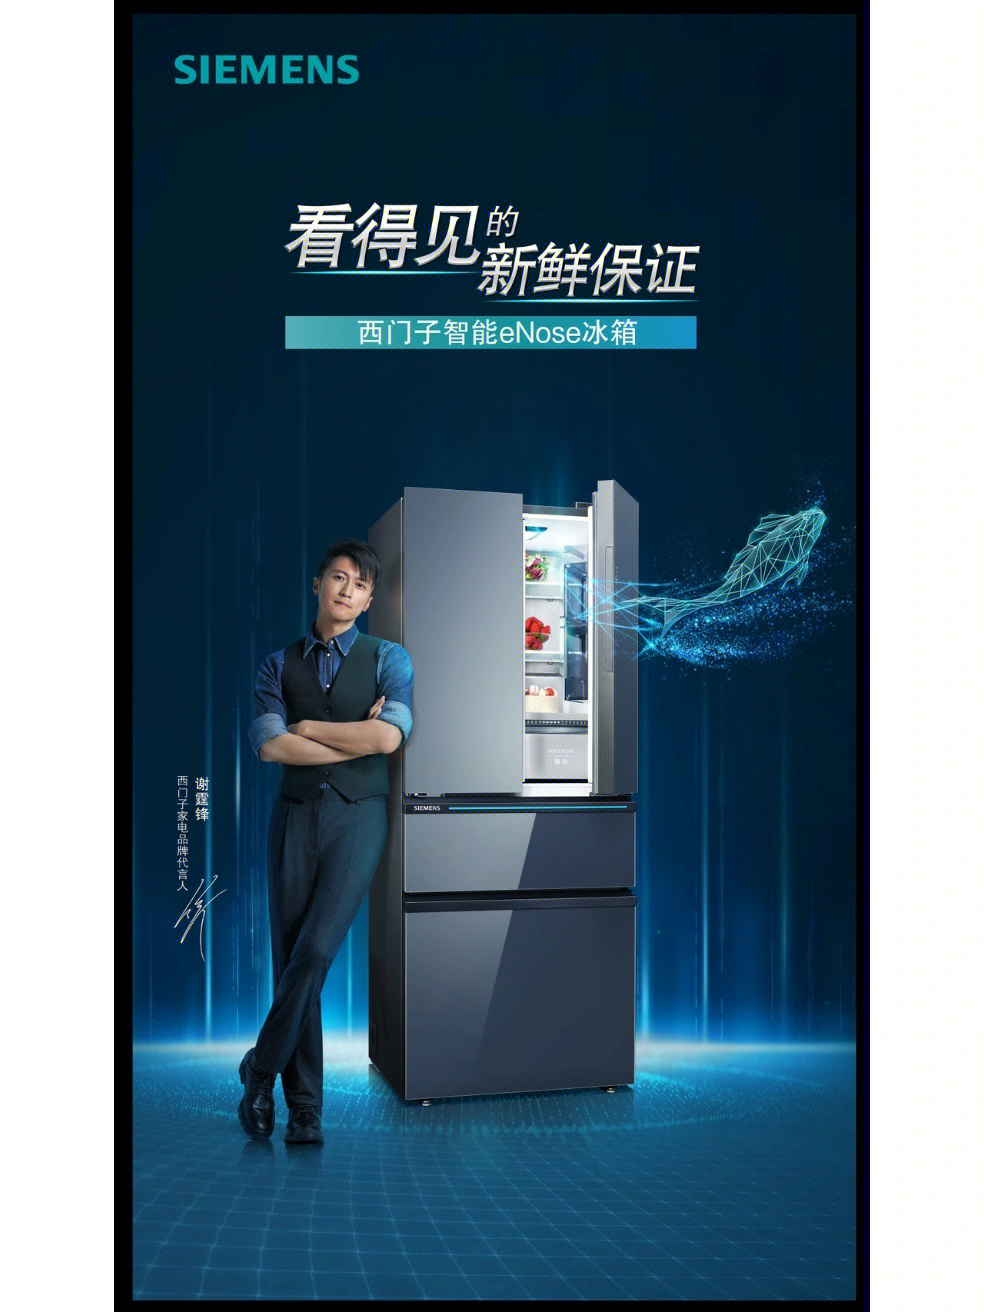 西门子中国广告图片